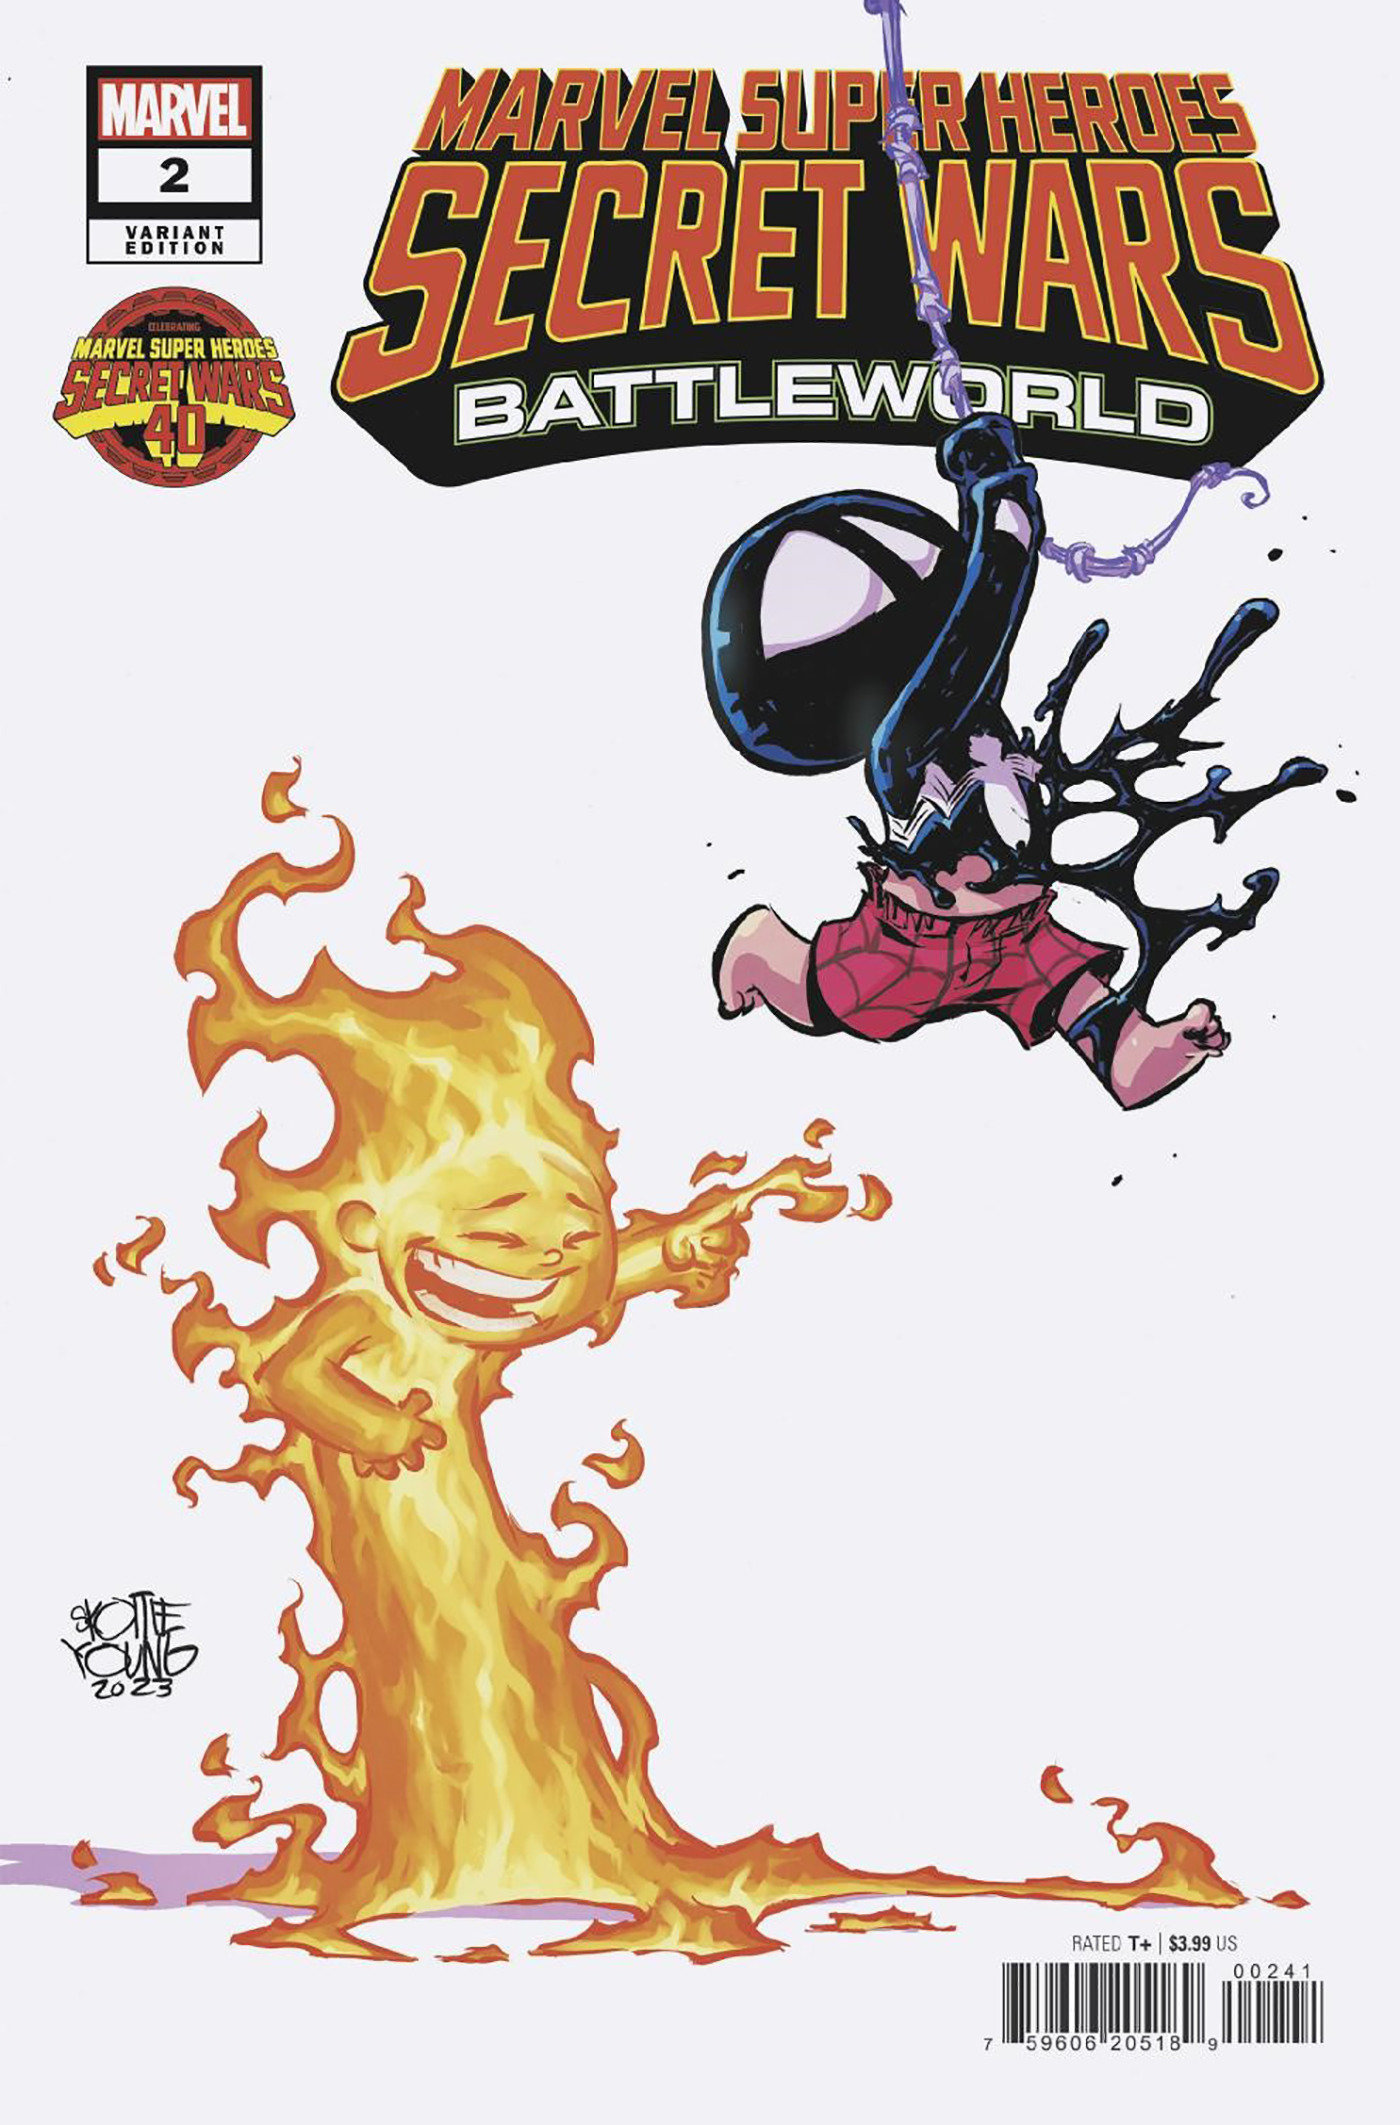 Marvel Super Heroes Secret Wars Battleworld #2 Skottie Young Variant